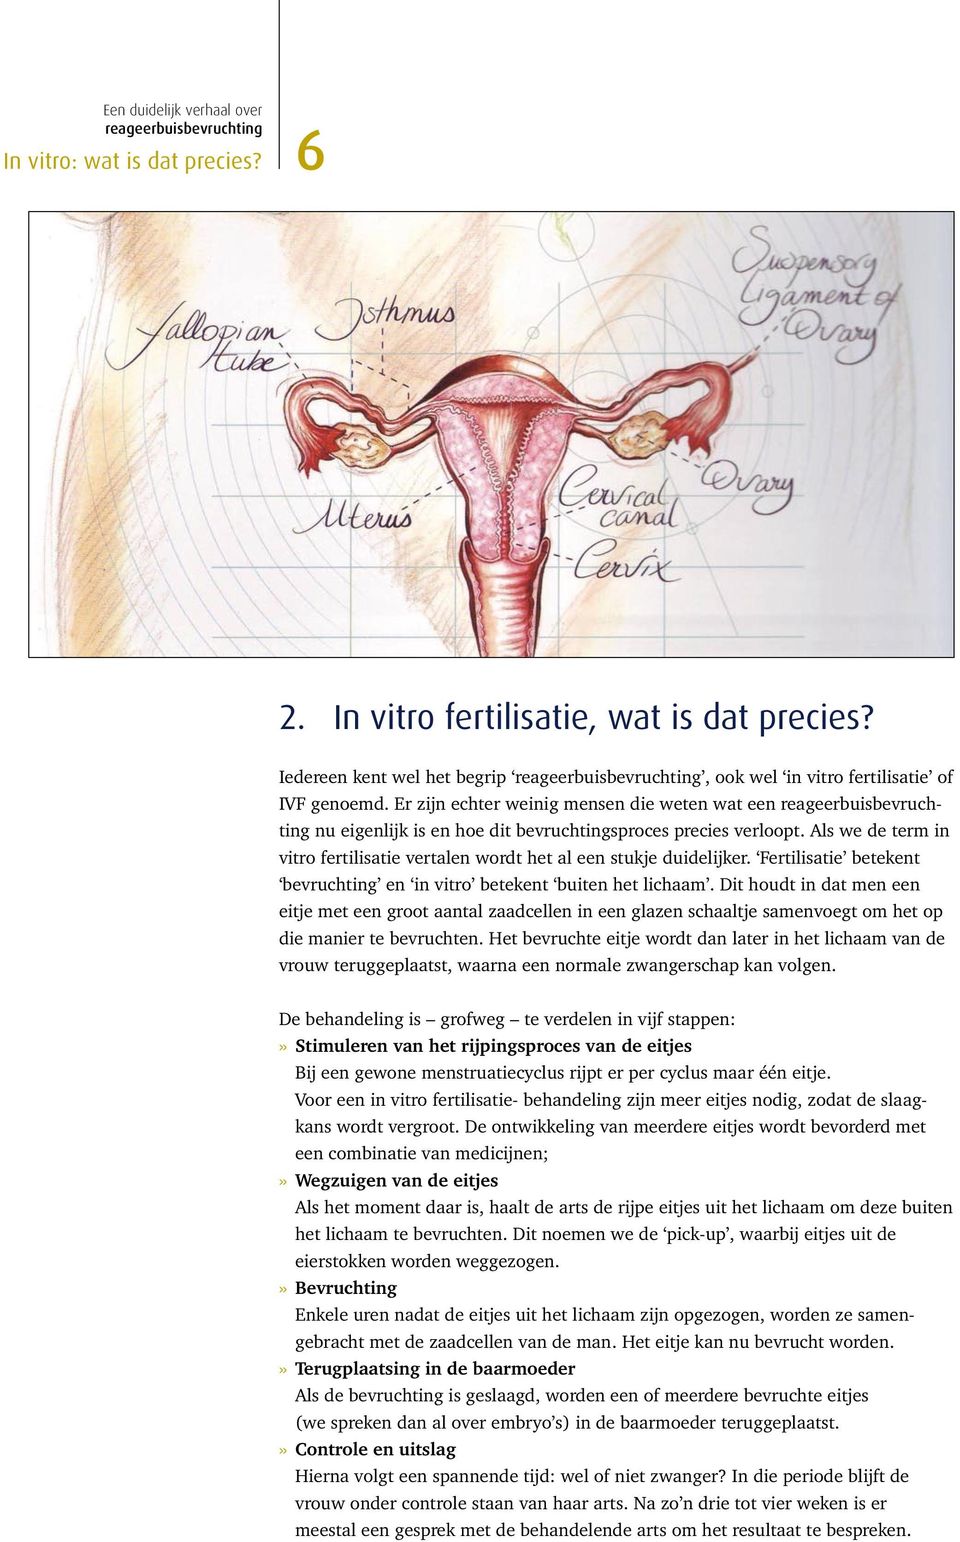 Fertilisatie betekent bevruchting en in vitro betekent buiten het lichaam.